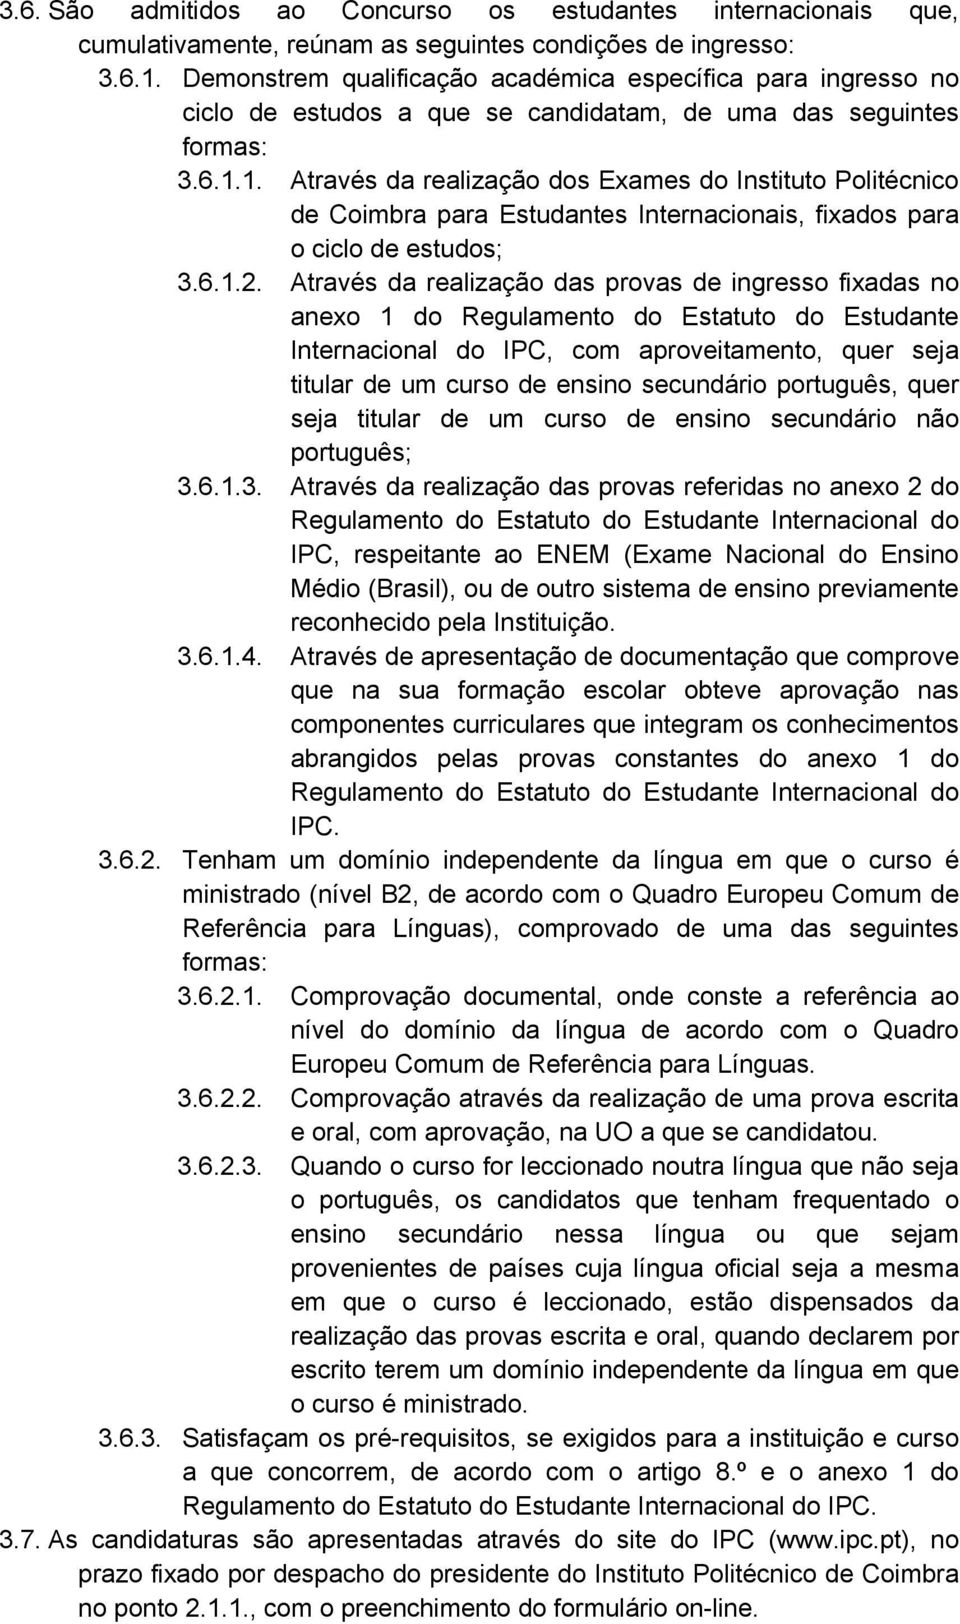 1. Através da realização dos Exames do Instituto Politécnico de Coimbra para Estudantes Internacionais, fixados para o ciclo de estudos; 3.6.1.2.